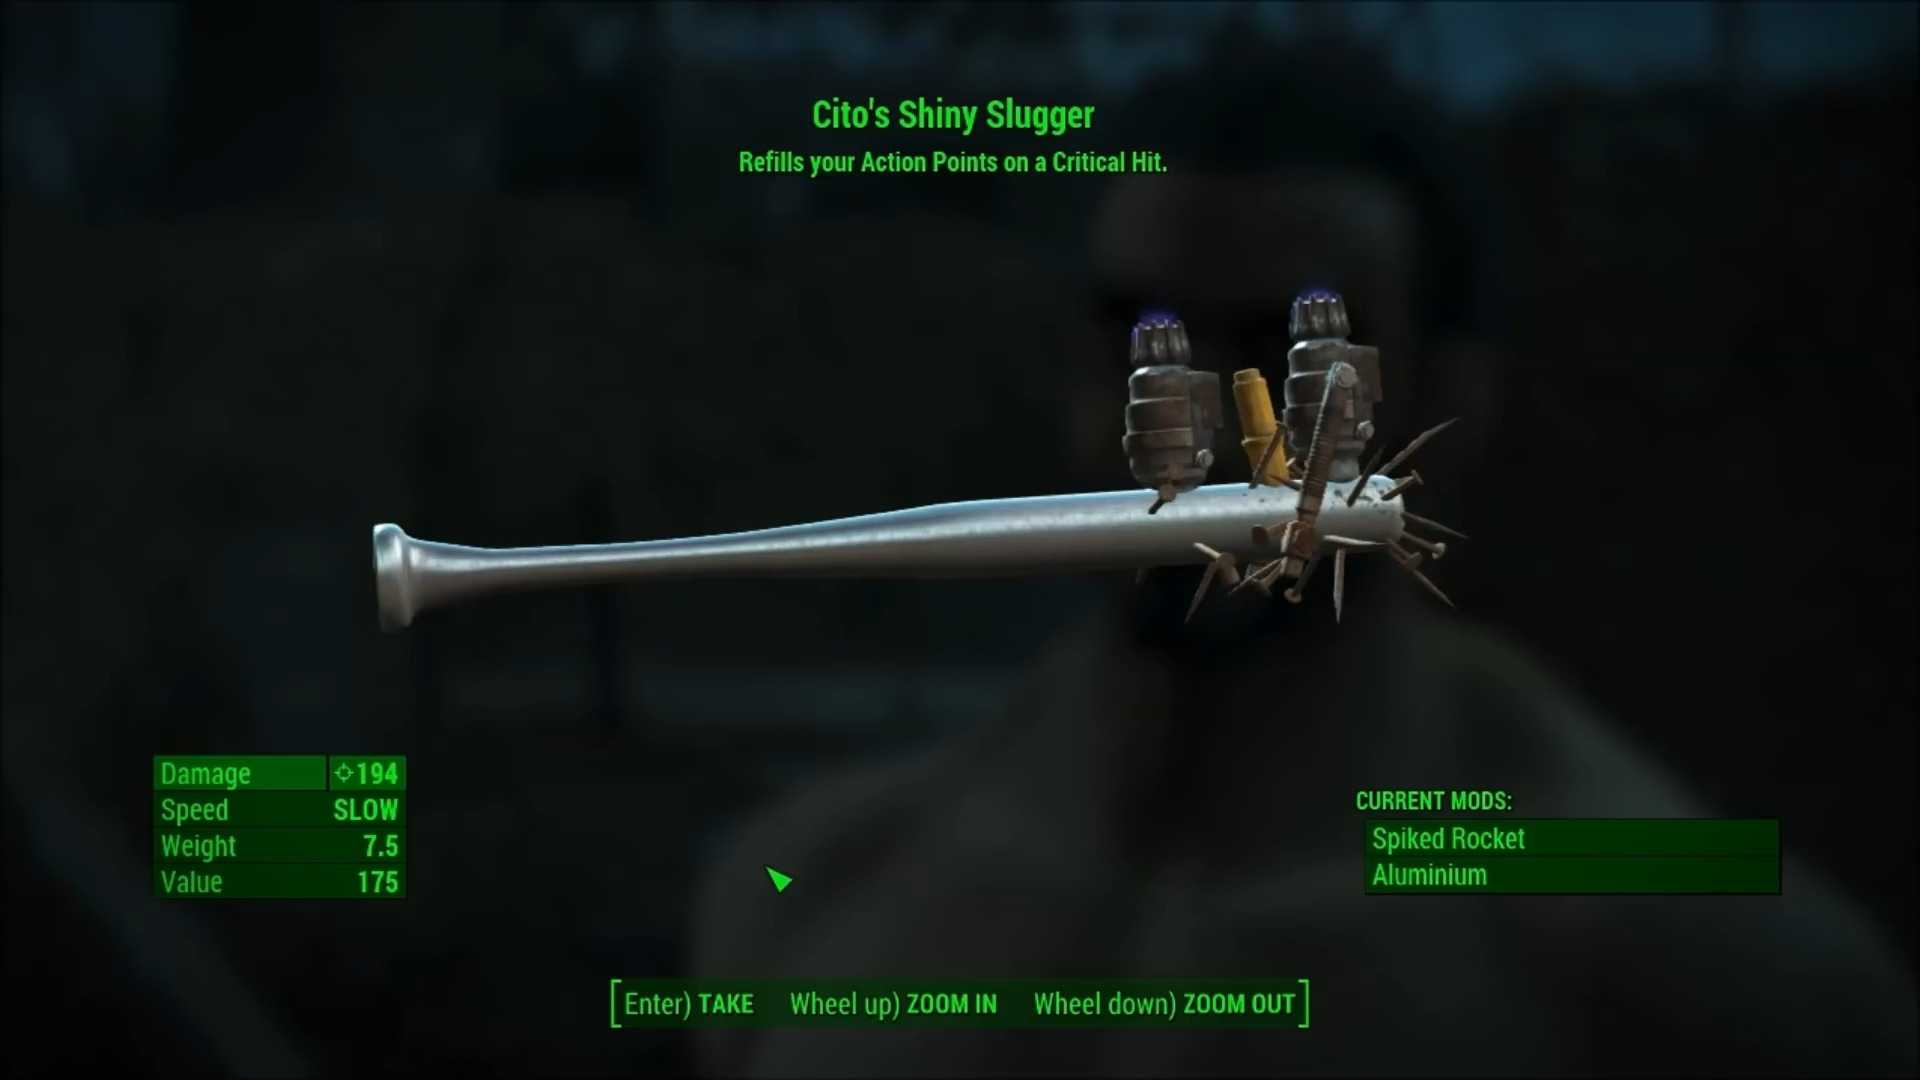 Cito's Shiny Slugger in Fallout 4